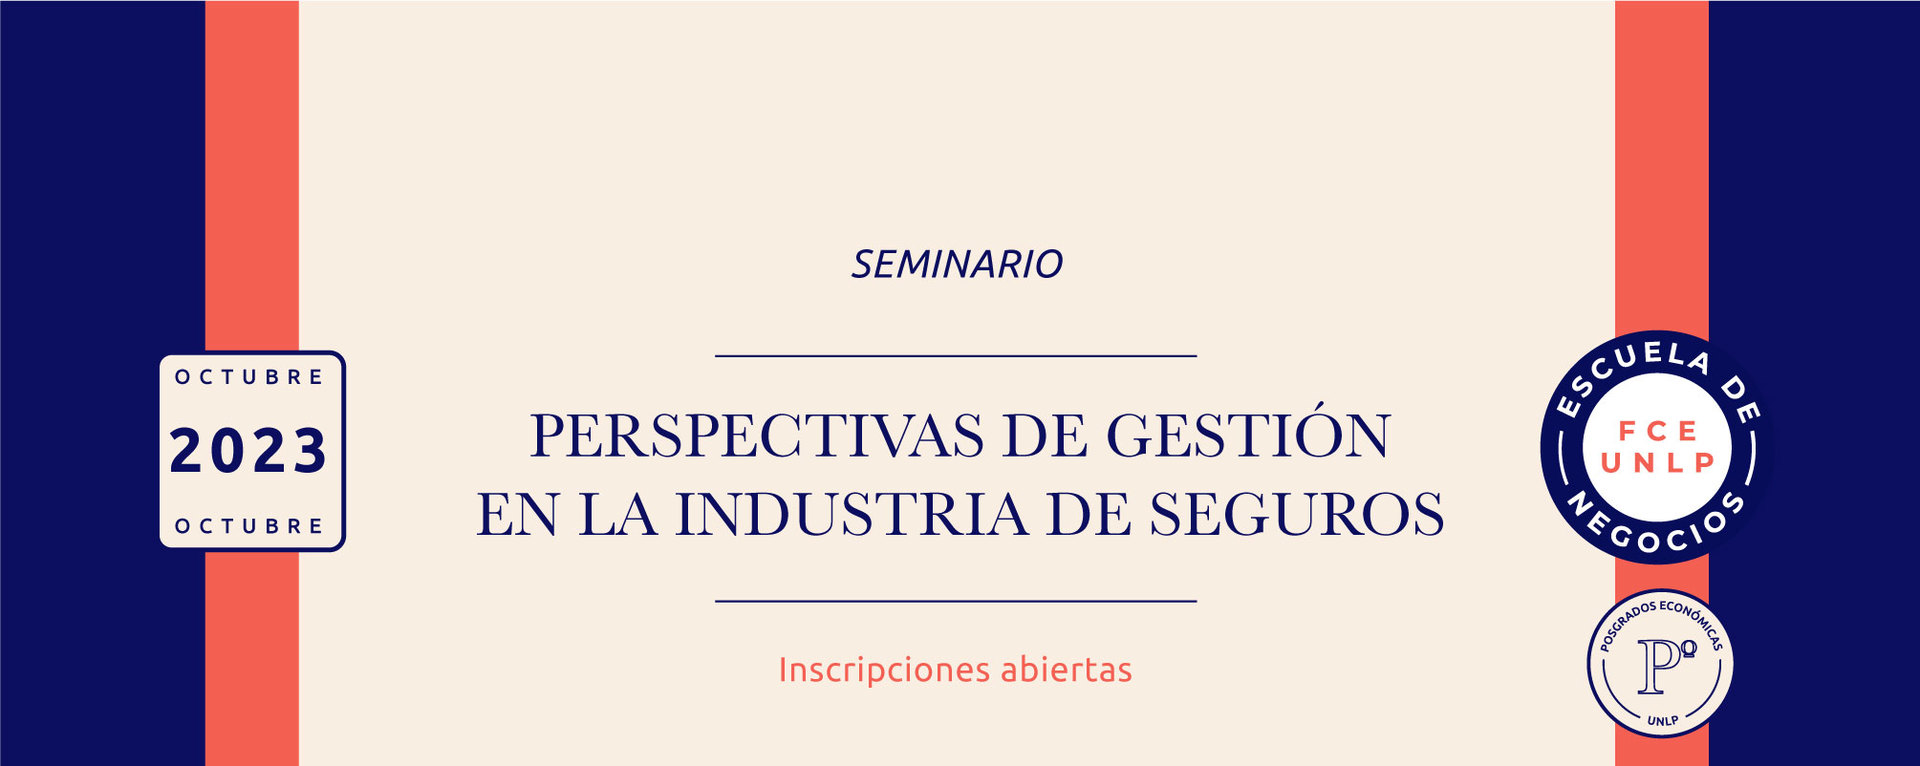 Abierta la inscripción - Seminario: Perspectivas de gestión en la Industria de Seguros